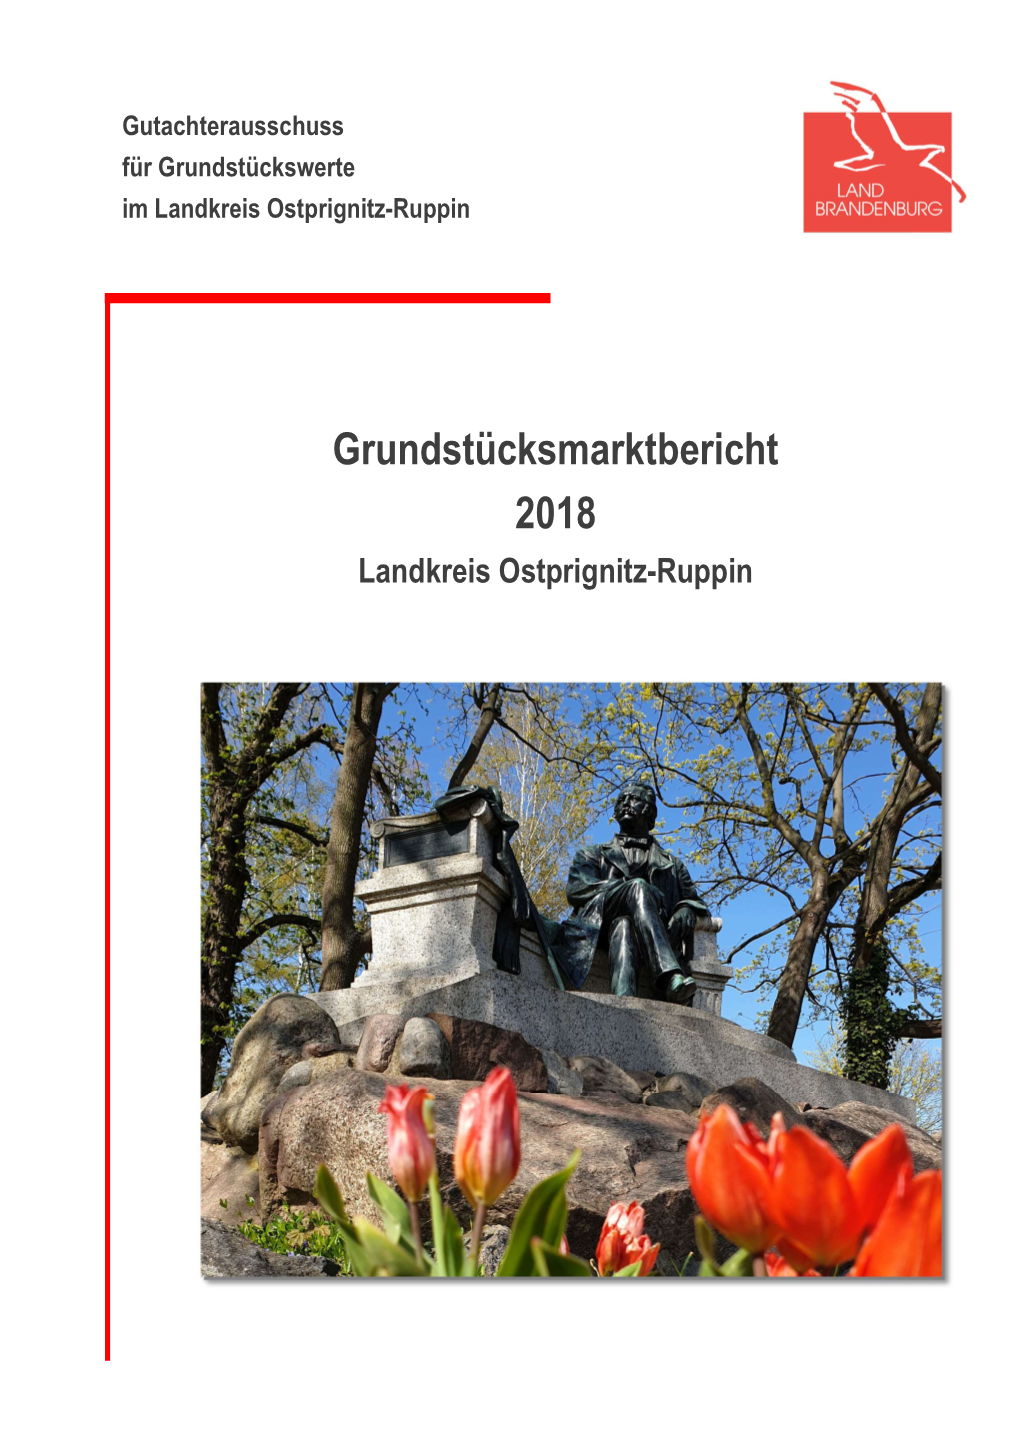 Grundstücksmarktbericht 2018 I Gutachterausschuss Für Grundstückswerte Im Landkreis Ostprignitz-Ruppin